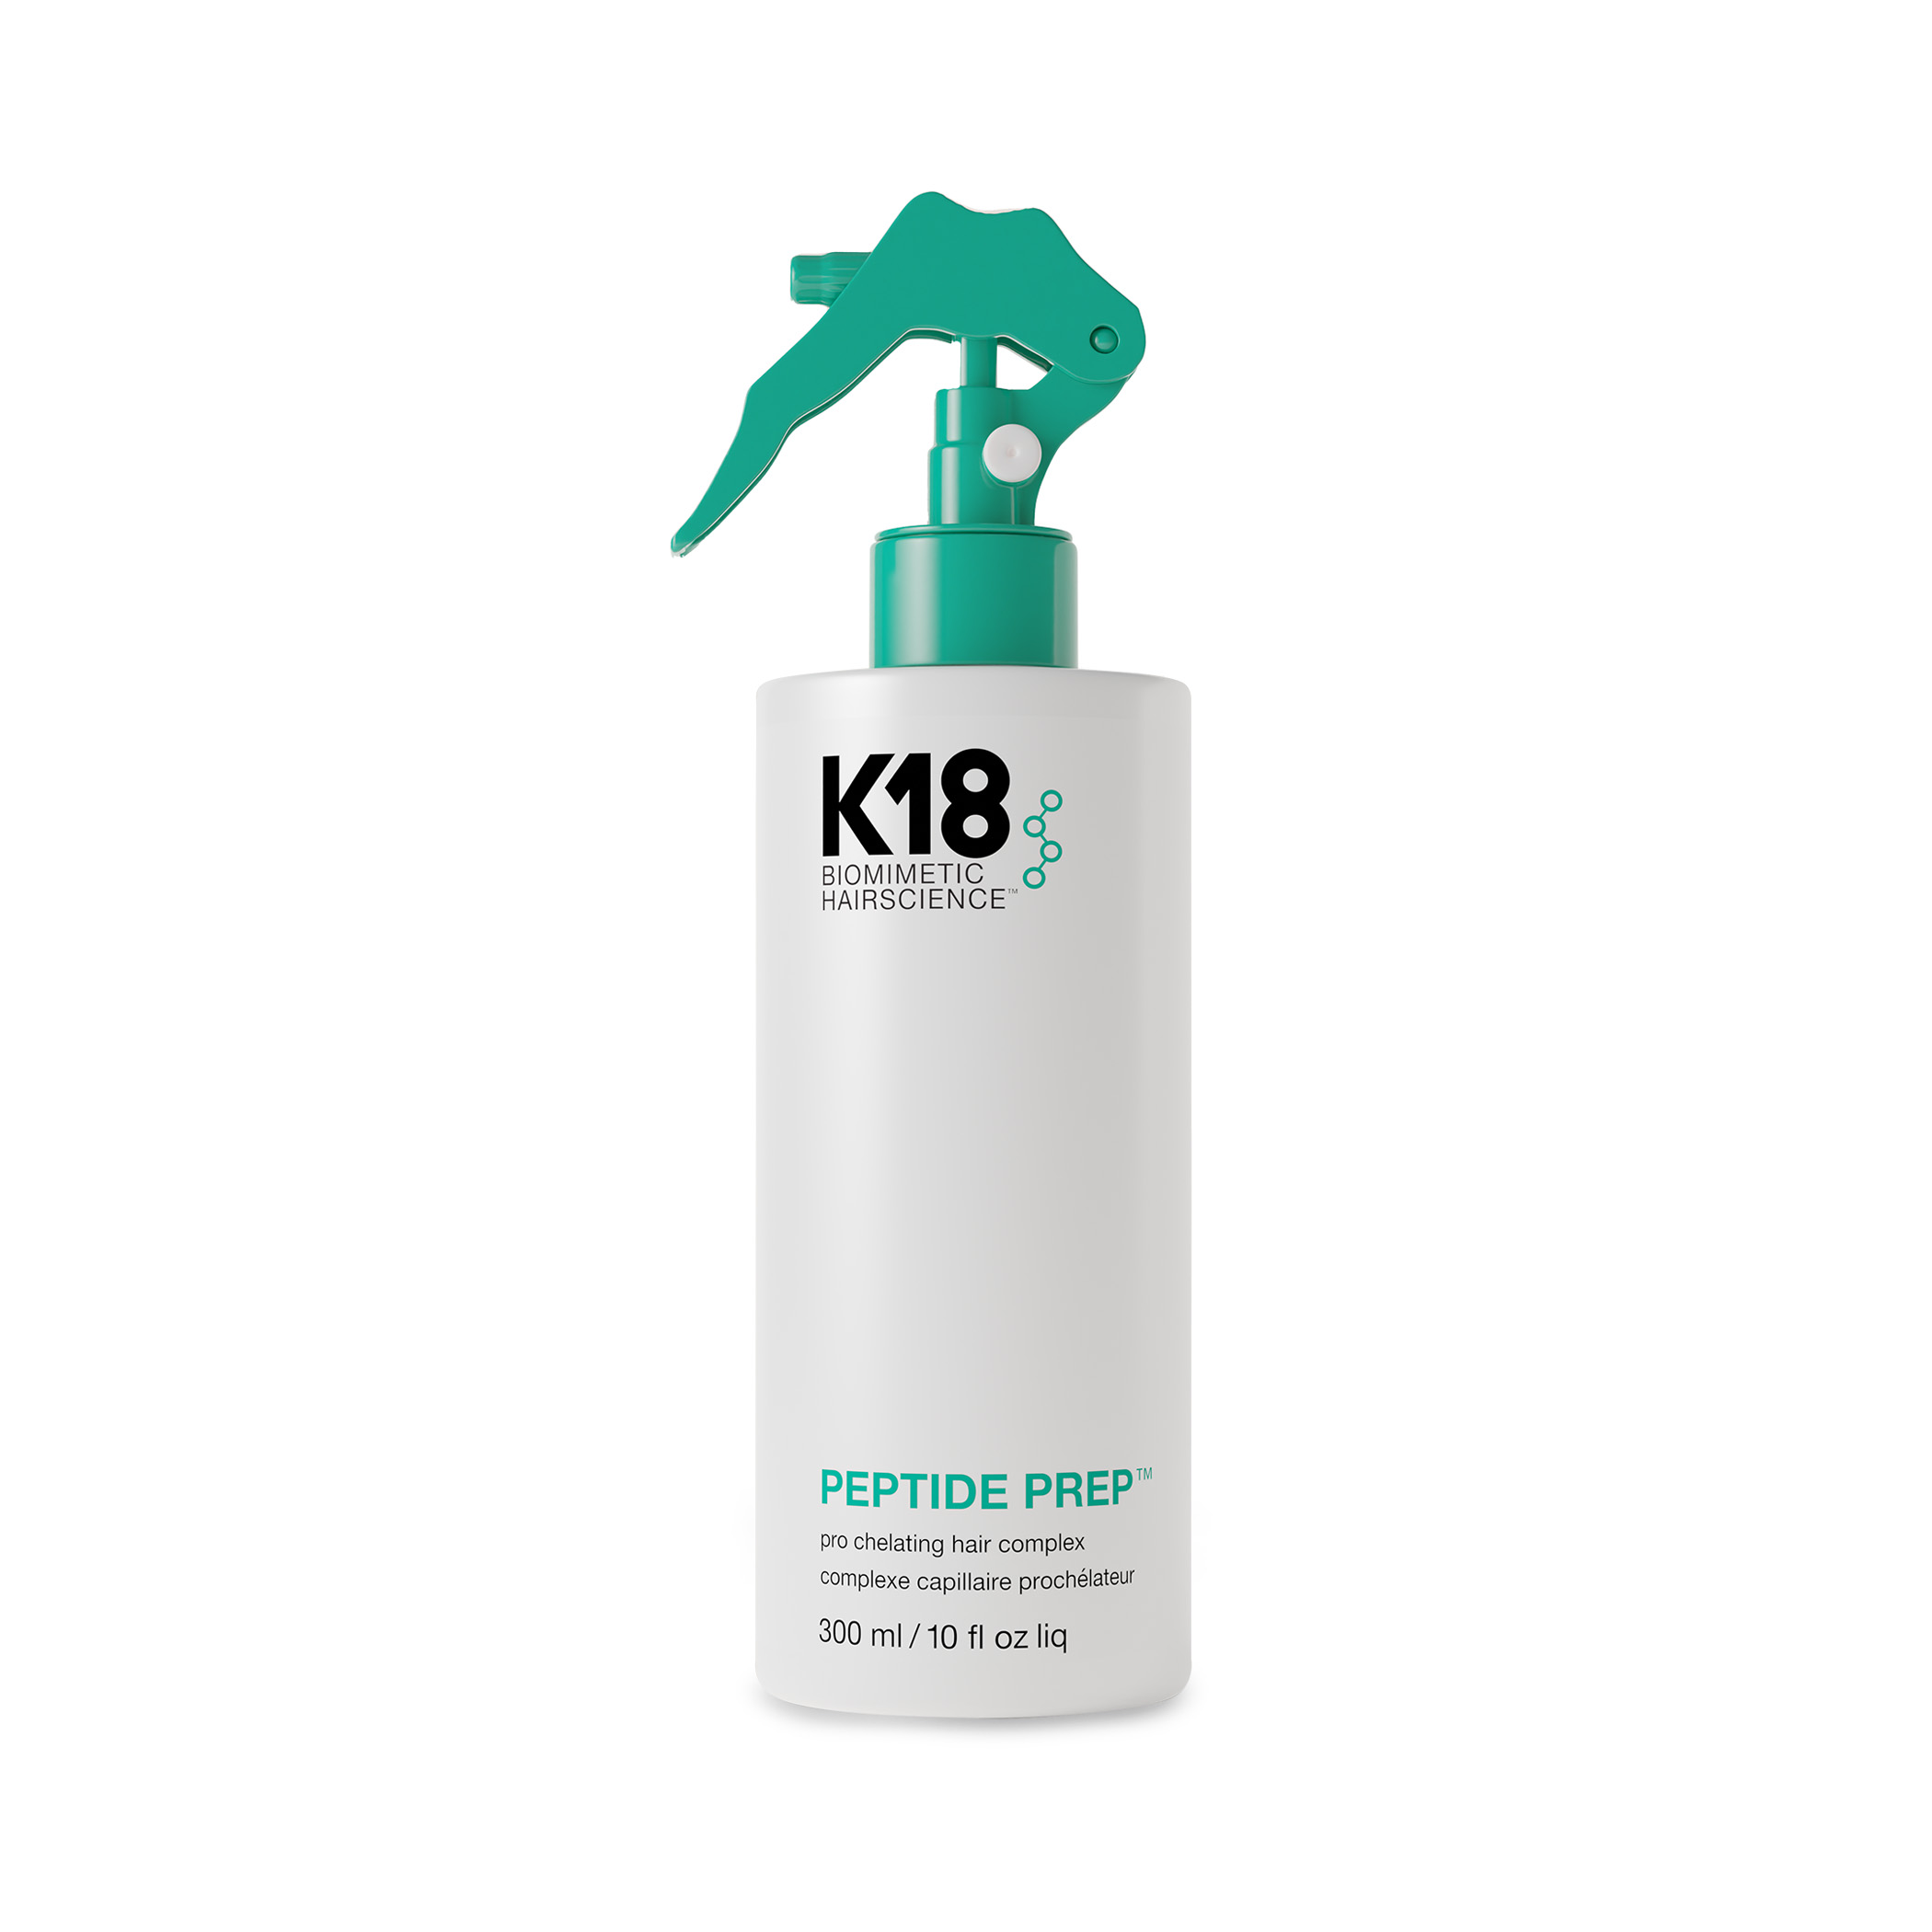 Хелатный Спрей Мист K18 Peptide Prep Pro Chelating Hair Complex 300 мл средство для глубокого очищения волос broad spectrum chelating treatment